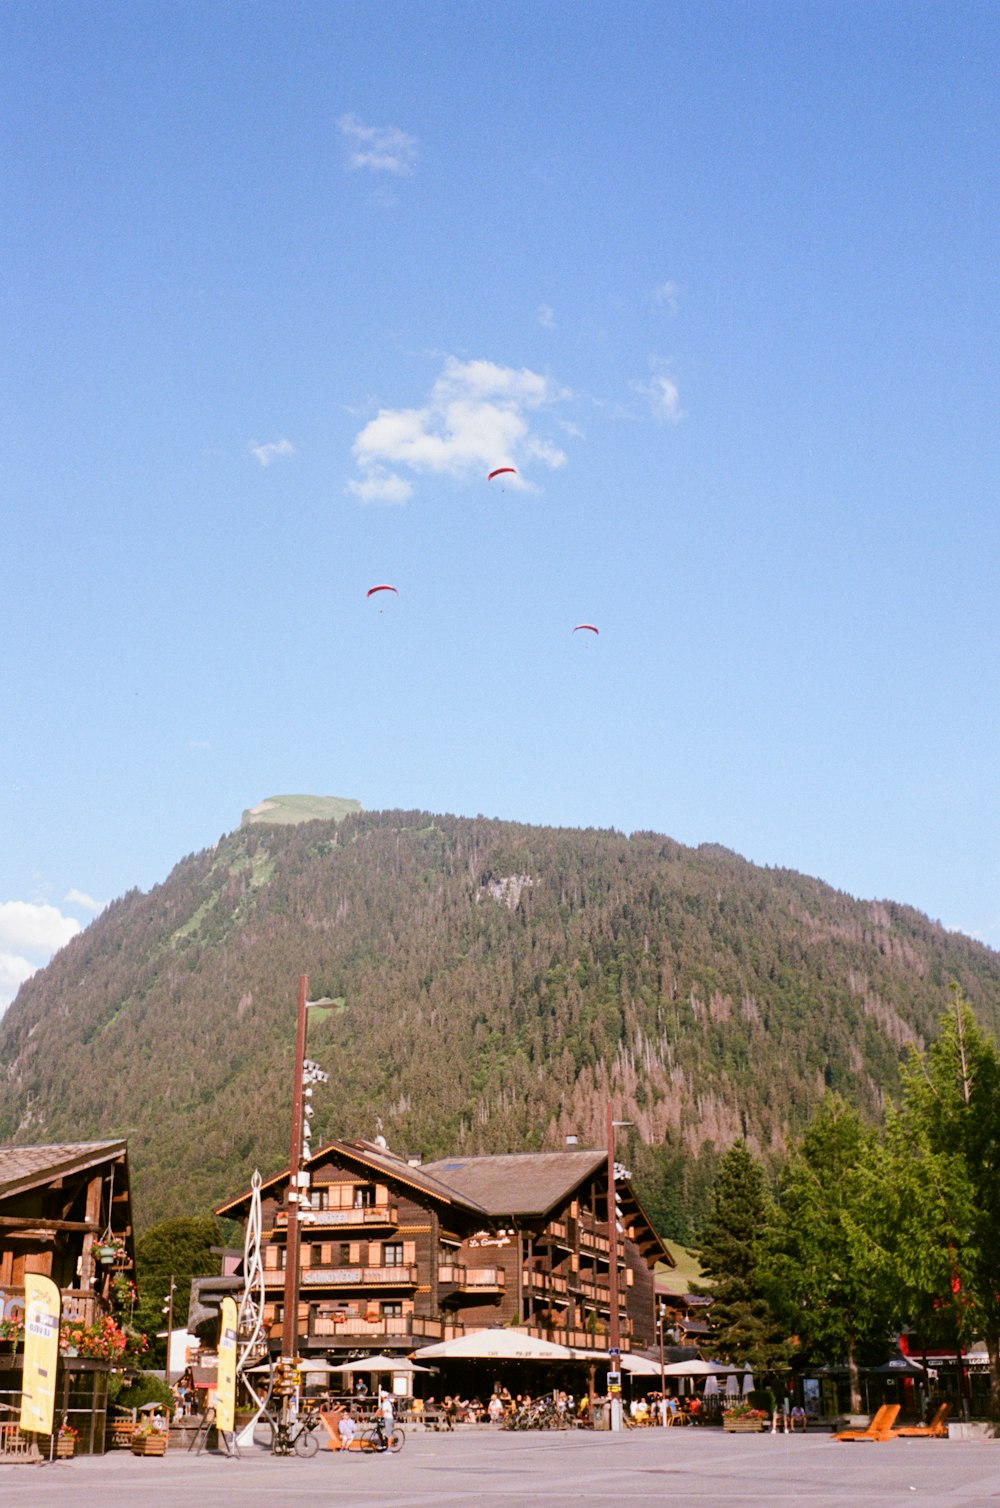 Un grupo de personas volando cometas frente a una montaña